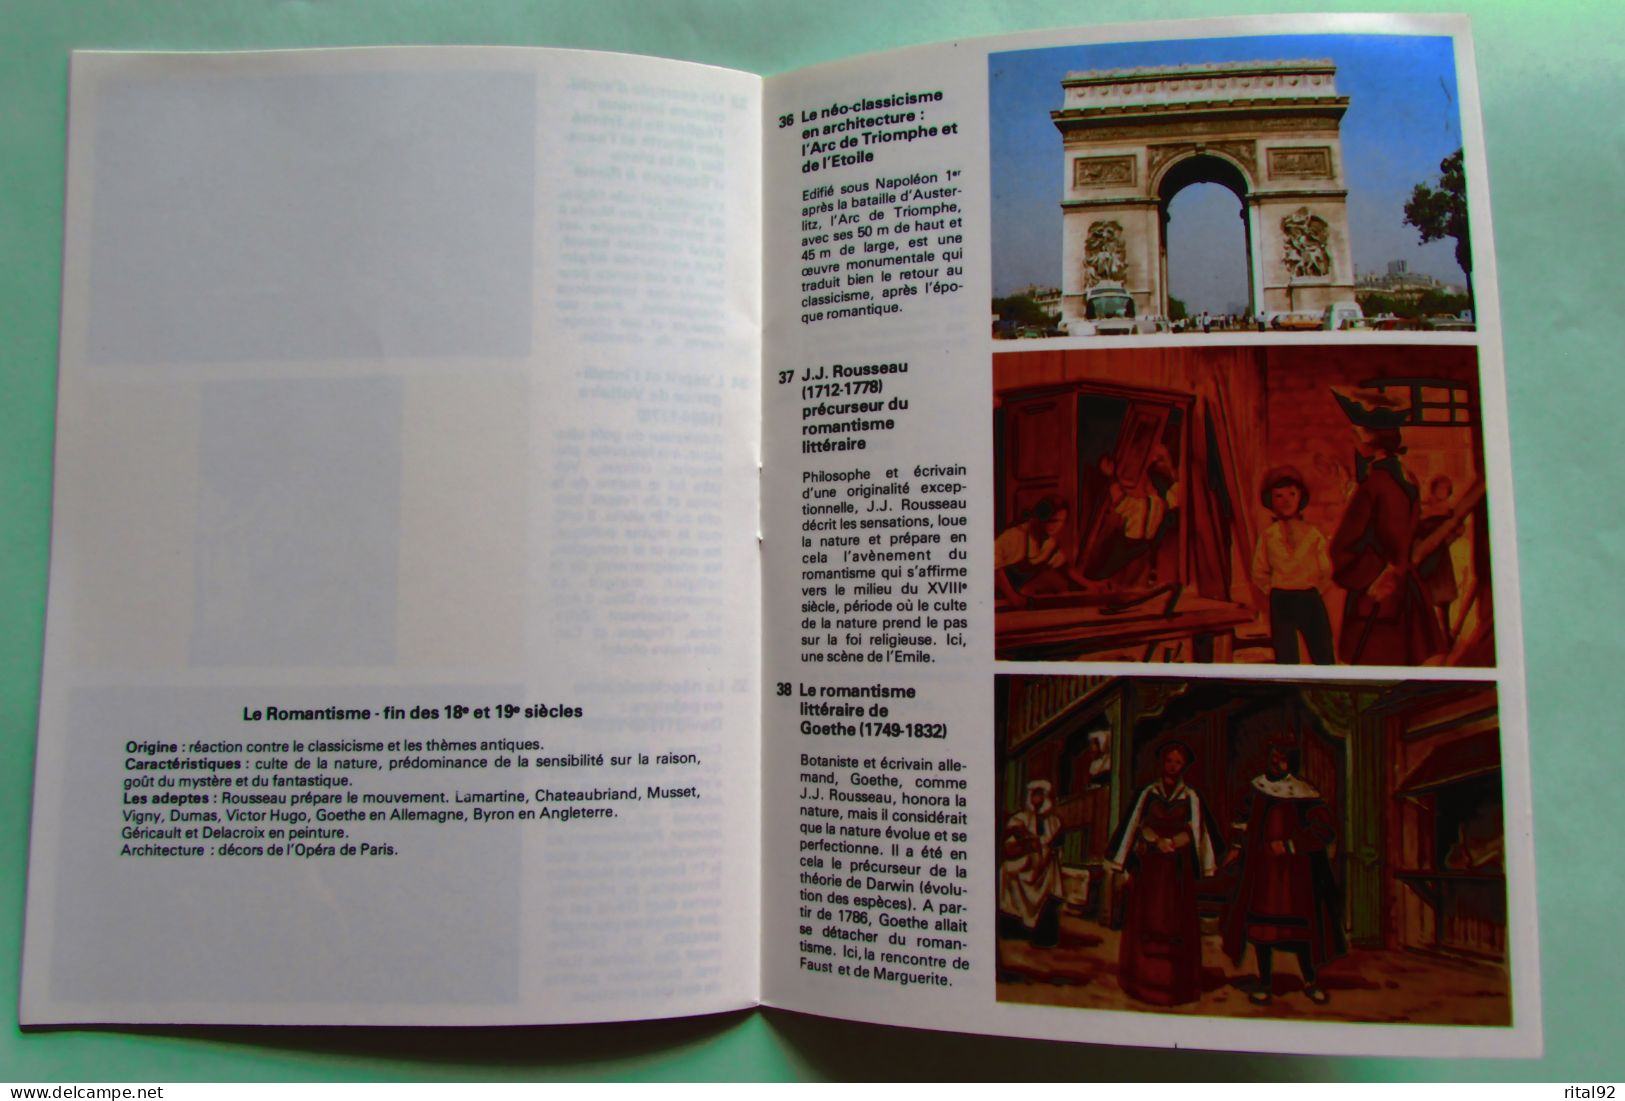 VOLUMETRIX - Livret Educatif Images à Découper - Edition 1979 - Lesekarten